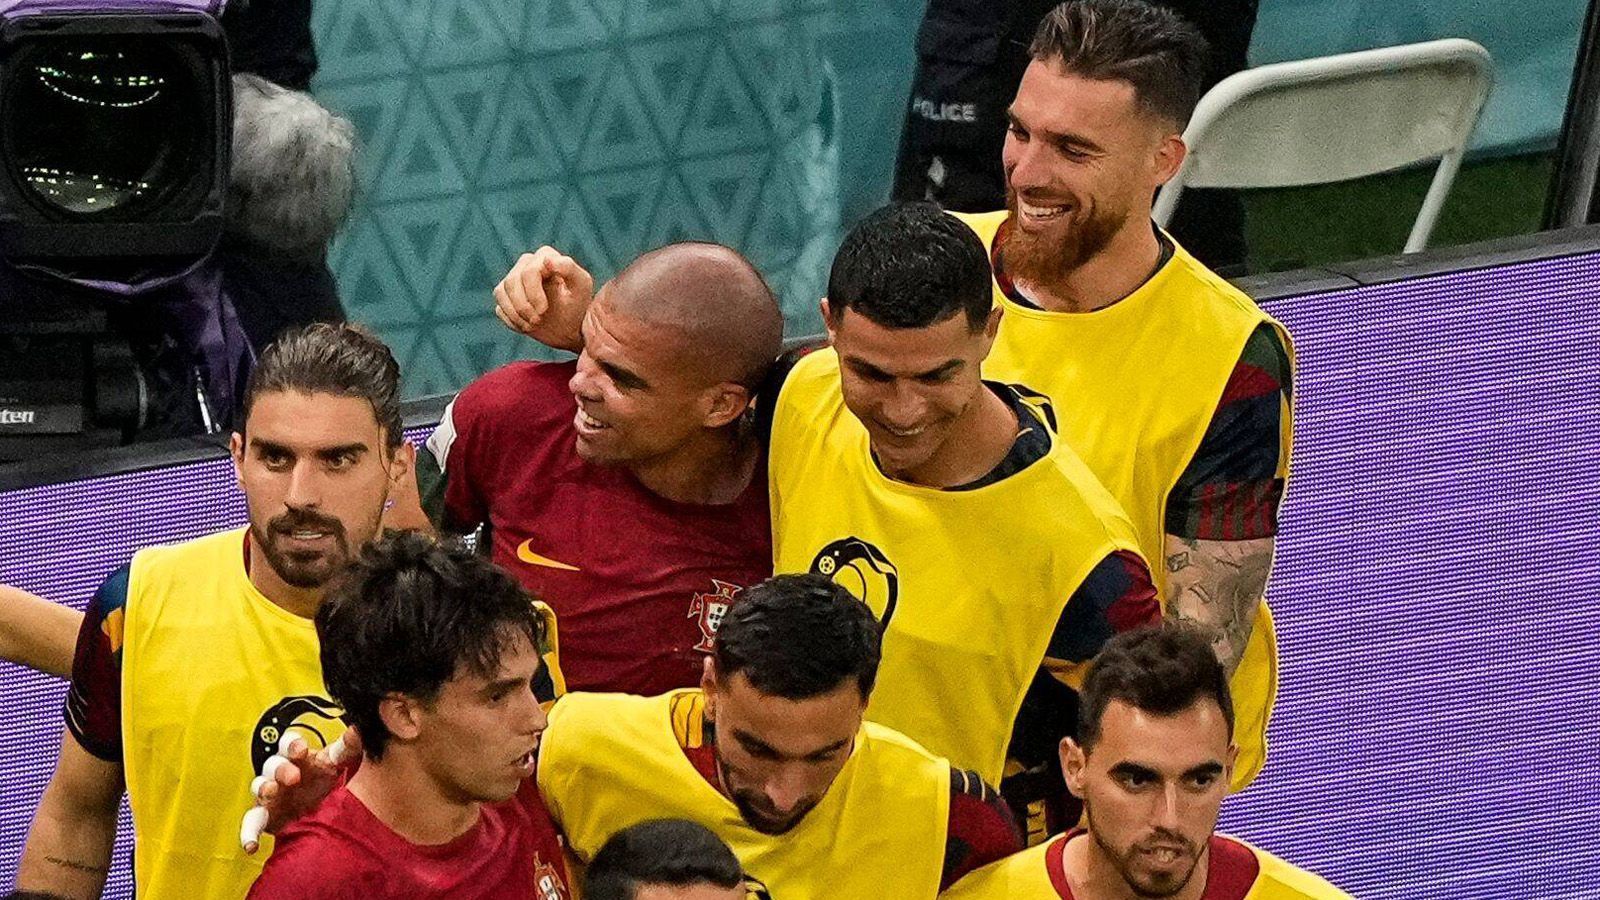 
                <strong>Gemeinsamer Jubel mit Pepe</strong><br>
                In der 33. Minute trifft Pepe per Kopf zum 2:0. Teamkollege Ronaldo lässt es sich trotz seines Platzes auf der Bank nicht nehmen, mit dem Innenverteidiger das Tor zu bejubeln.
              